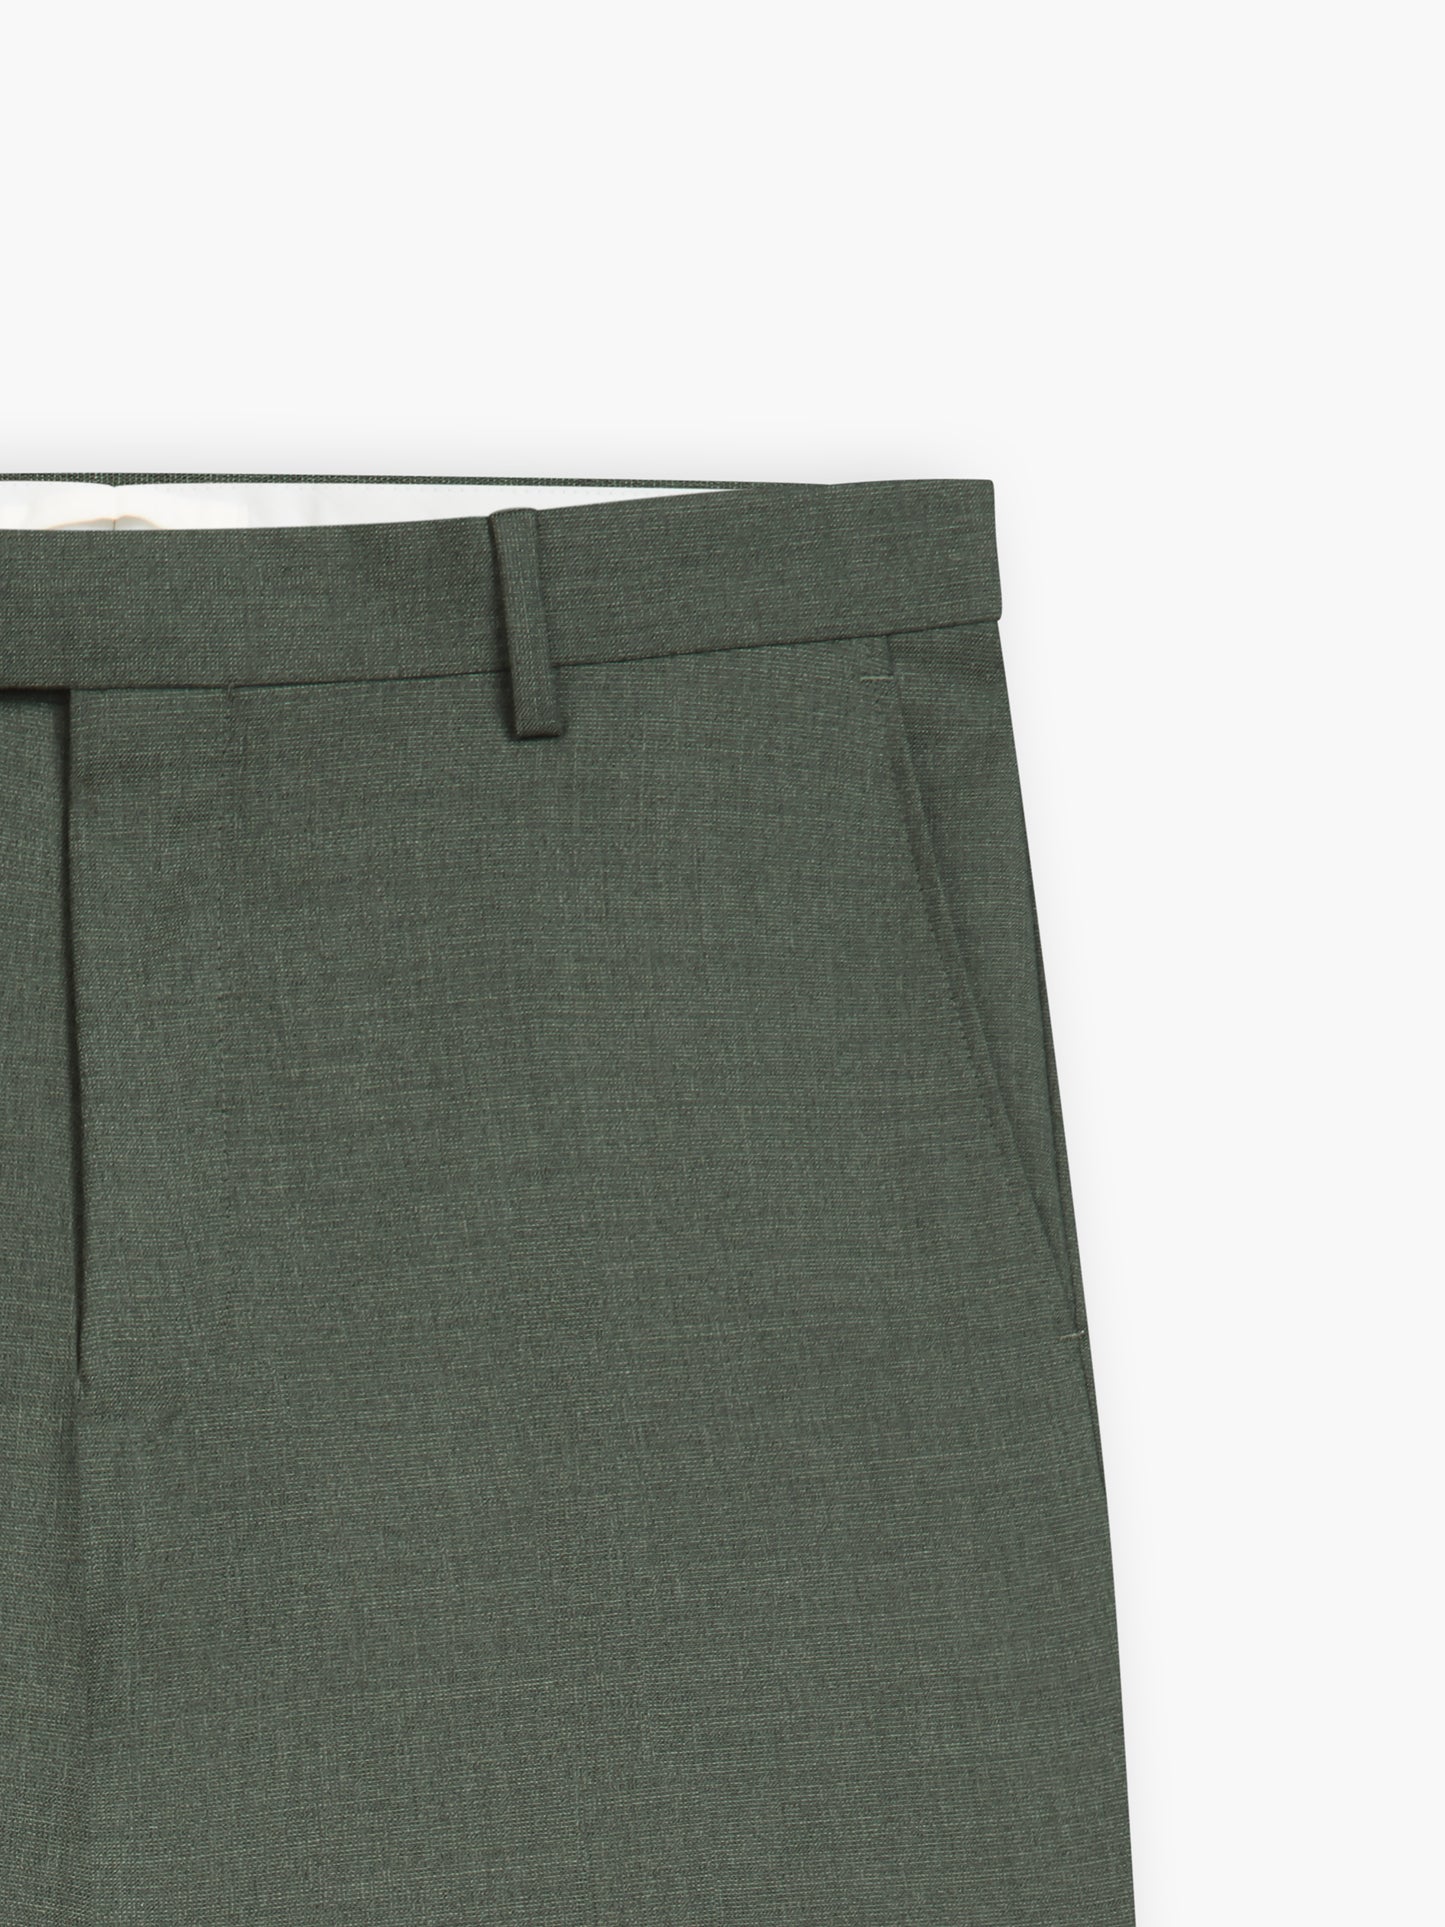 Olivetti Barberis Slim Fit Olive Green Trouser